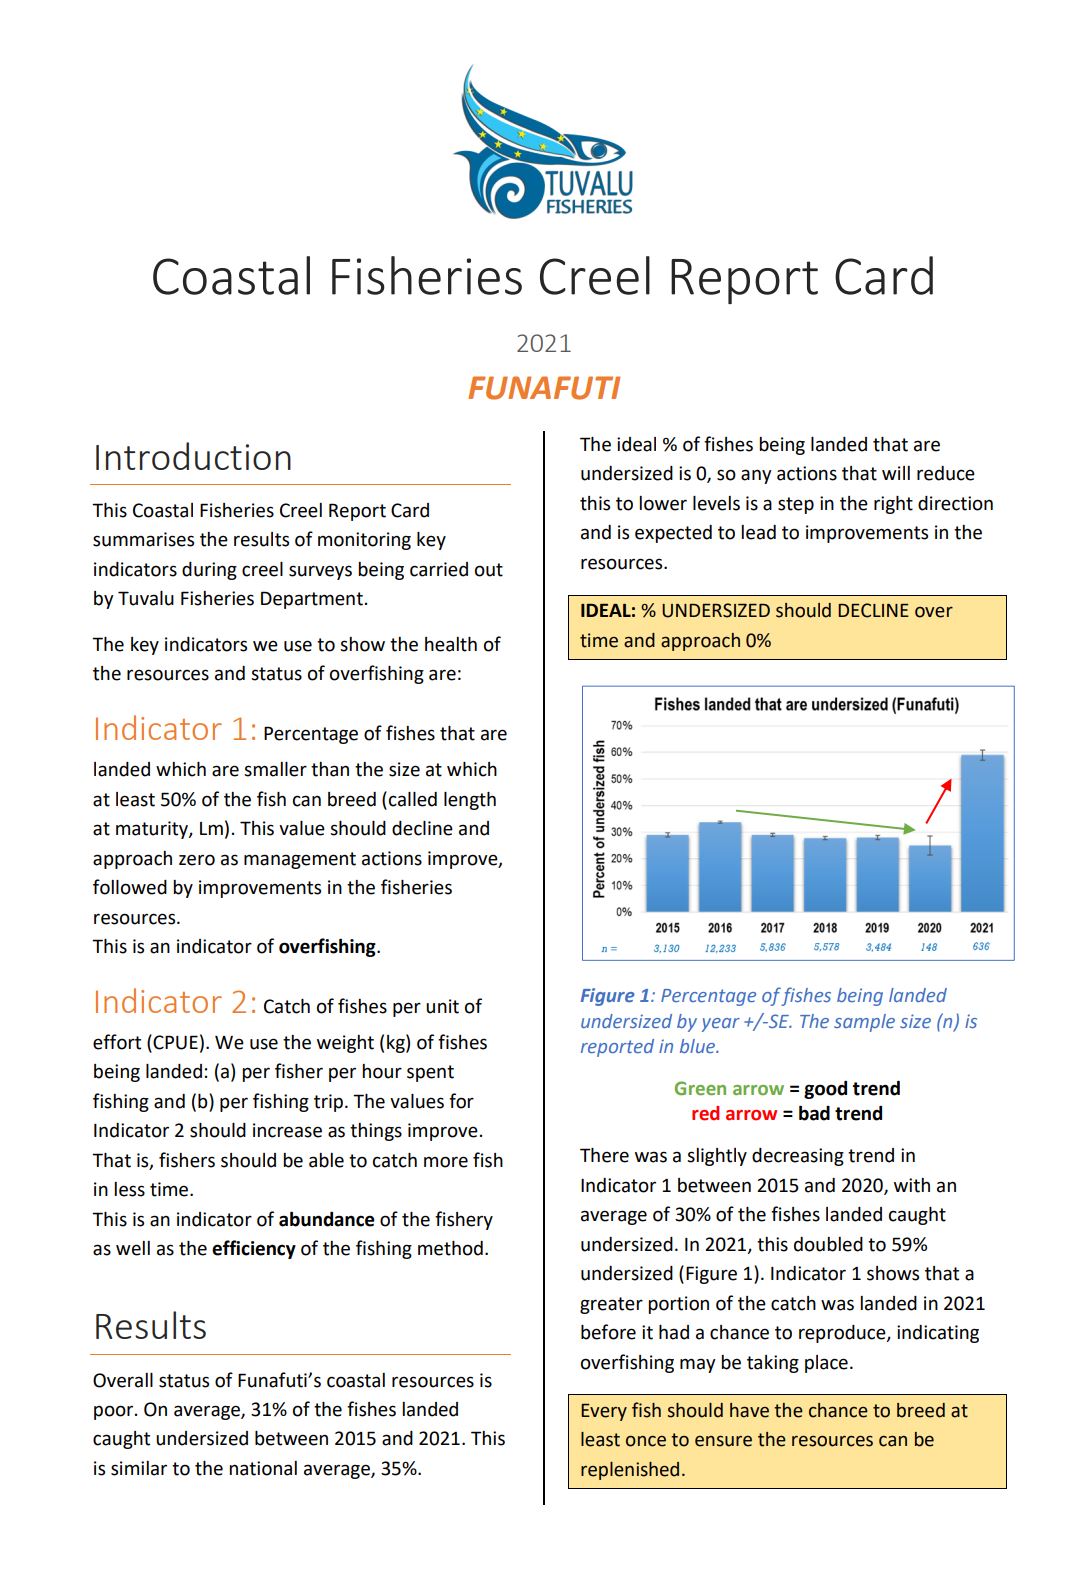 Creel Report Card Funafuti 2021